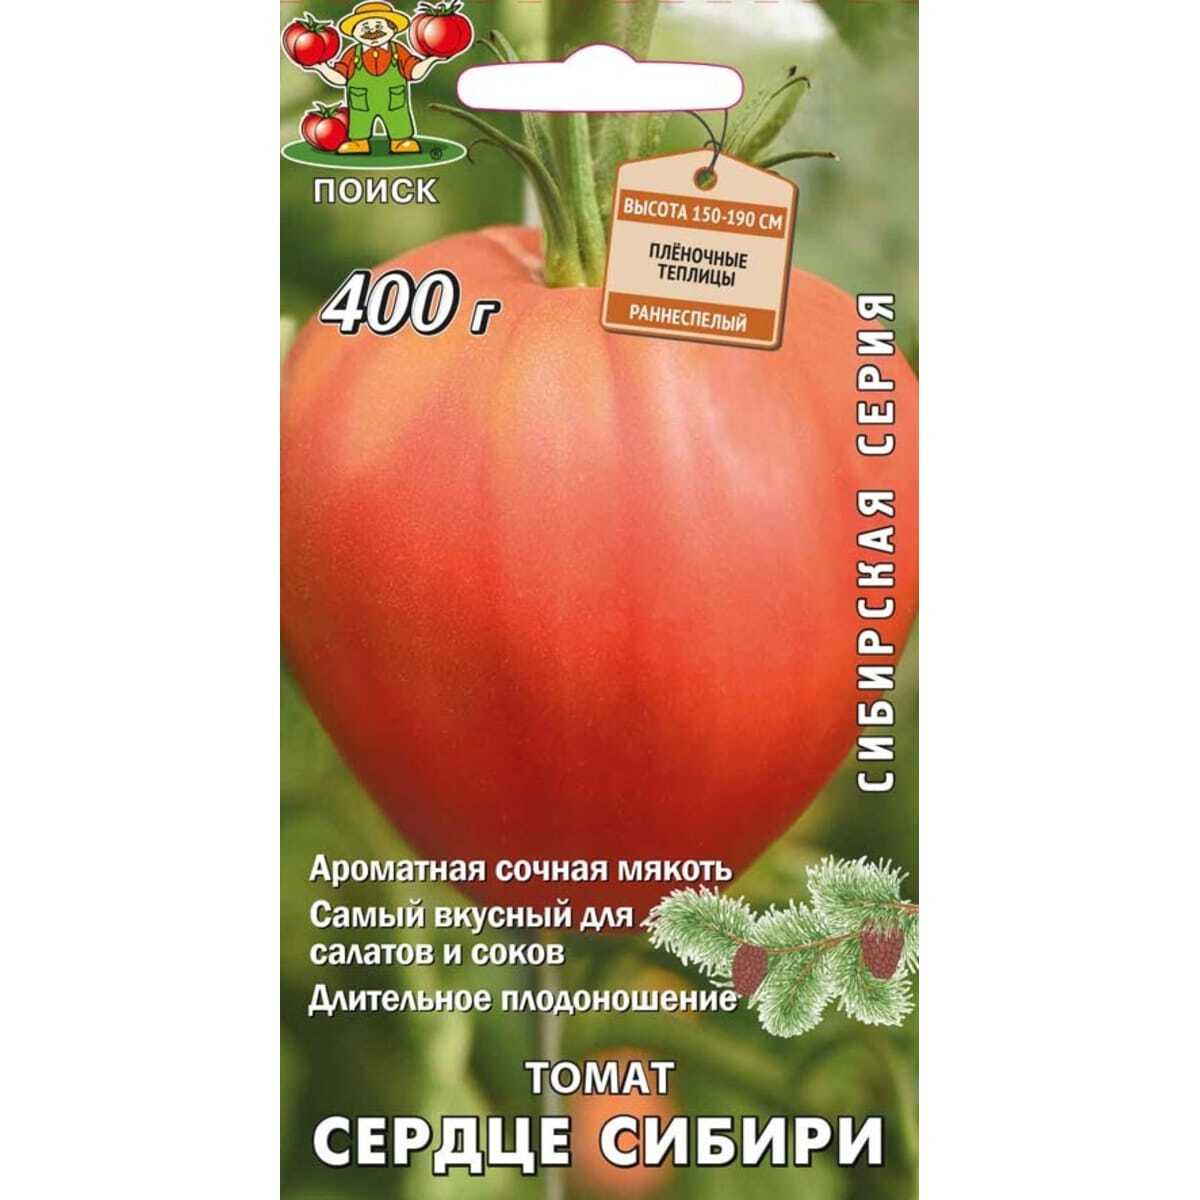 Оби каталог семян томатов как нейтрализовать тест на марихуану